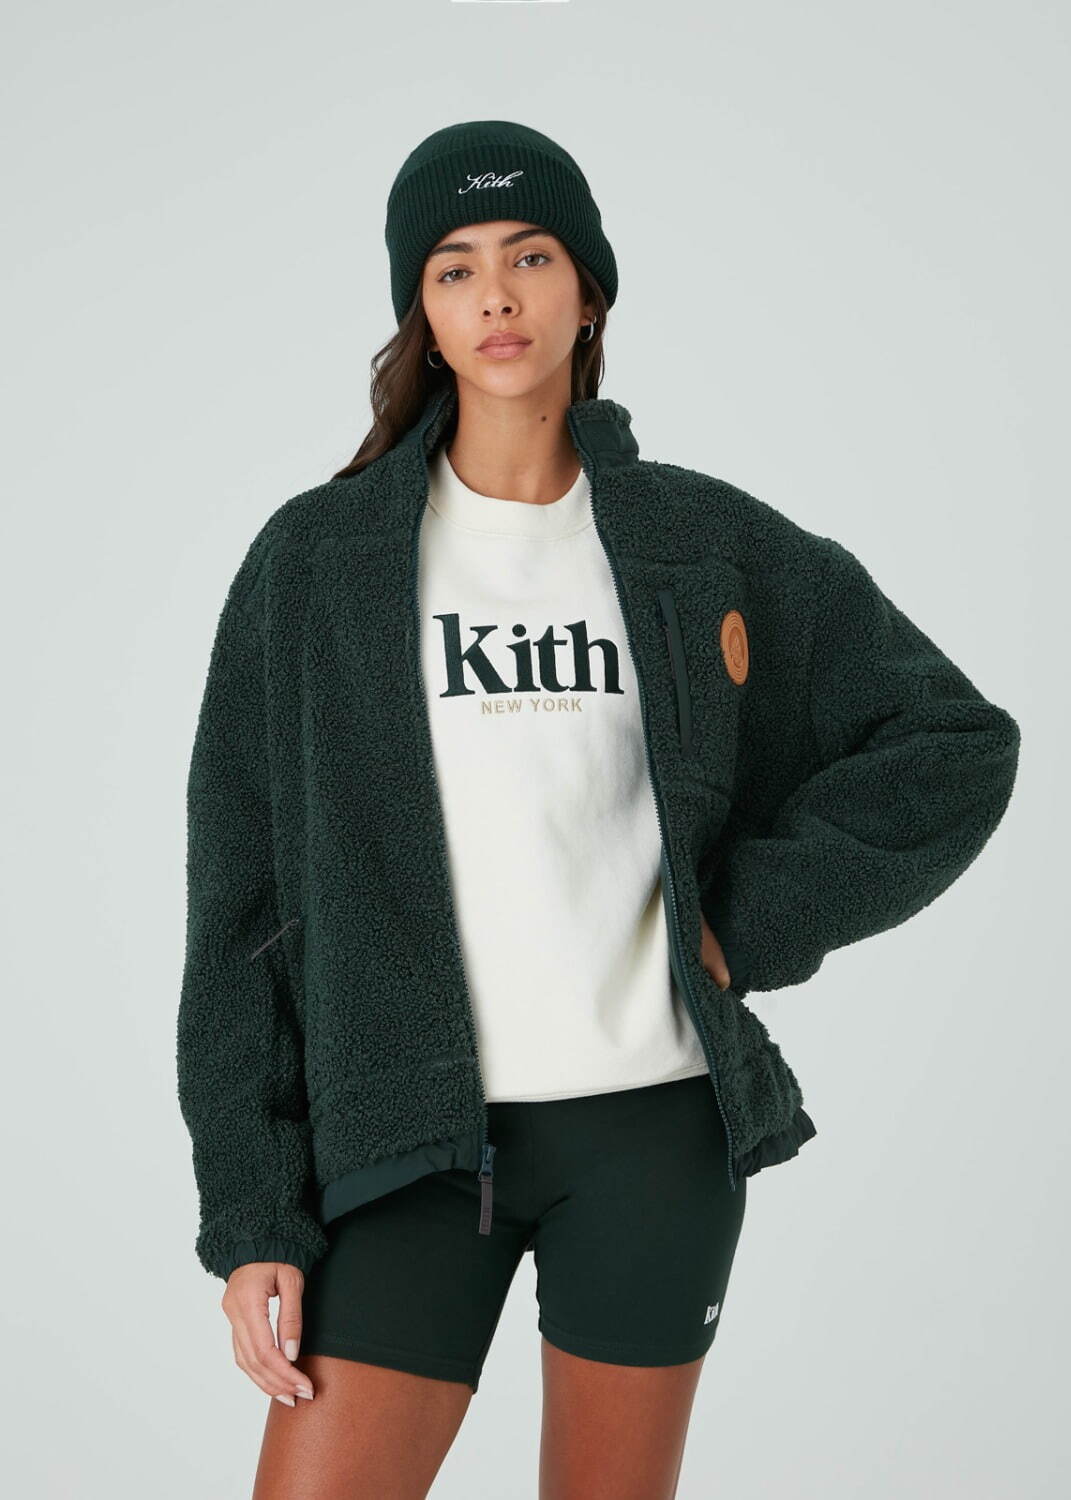 キス(Kith) 2021年冬ウィメンズコレクション  - 写真78